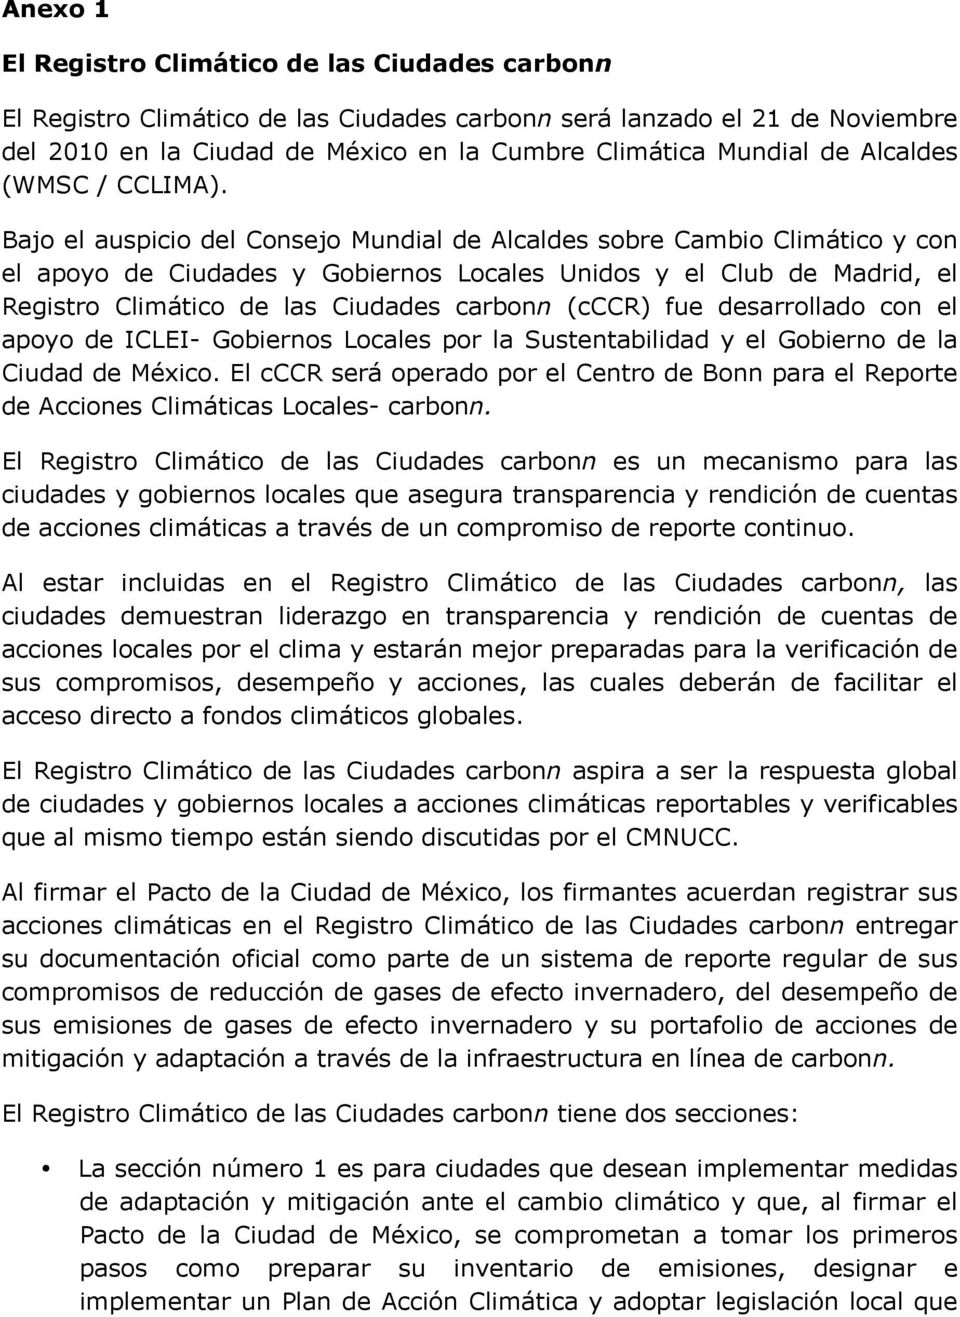 Bajo el auspicio del Consejo Mundial de Alcaldes sobre Cambio Climático y con el apoyo de Ciudades y Gobiernos Locales Unidos y el Club de Madrid, el Registro Climático de las Ciudades carbonn (cccr)